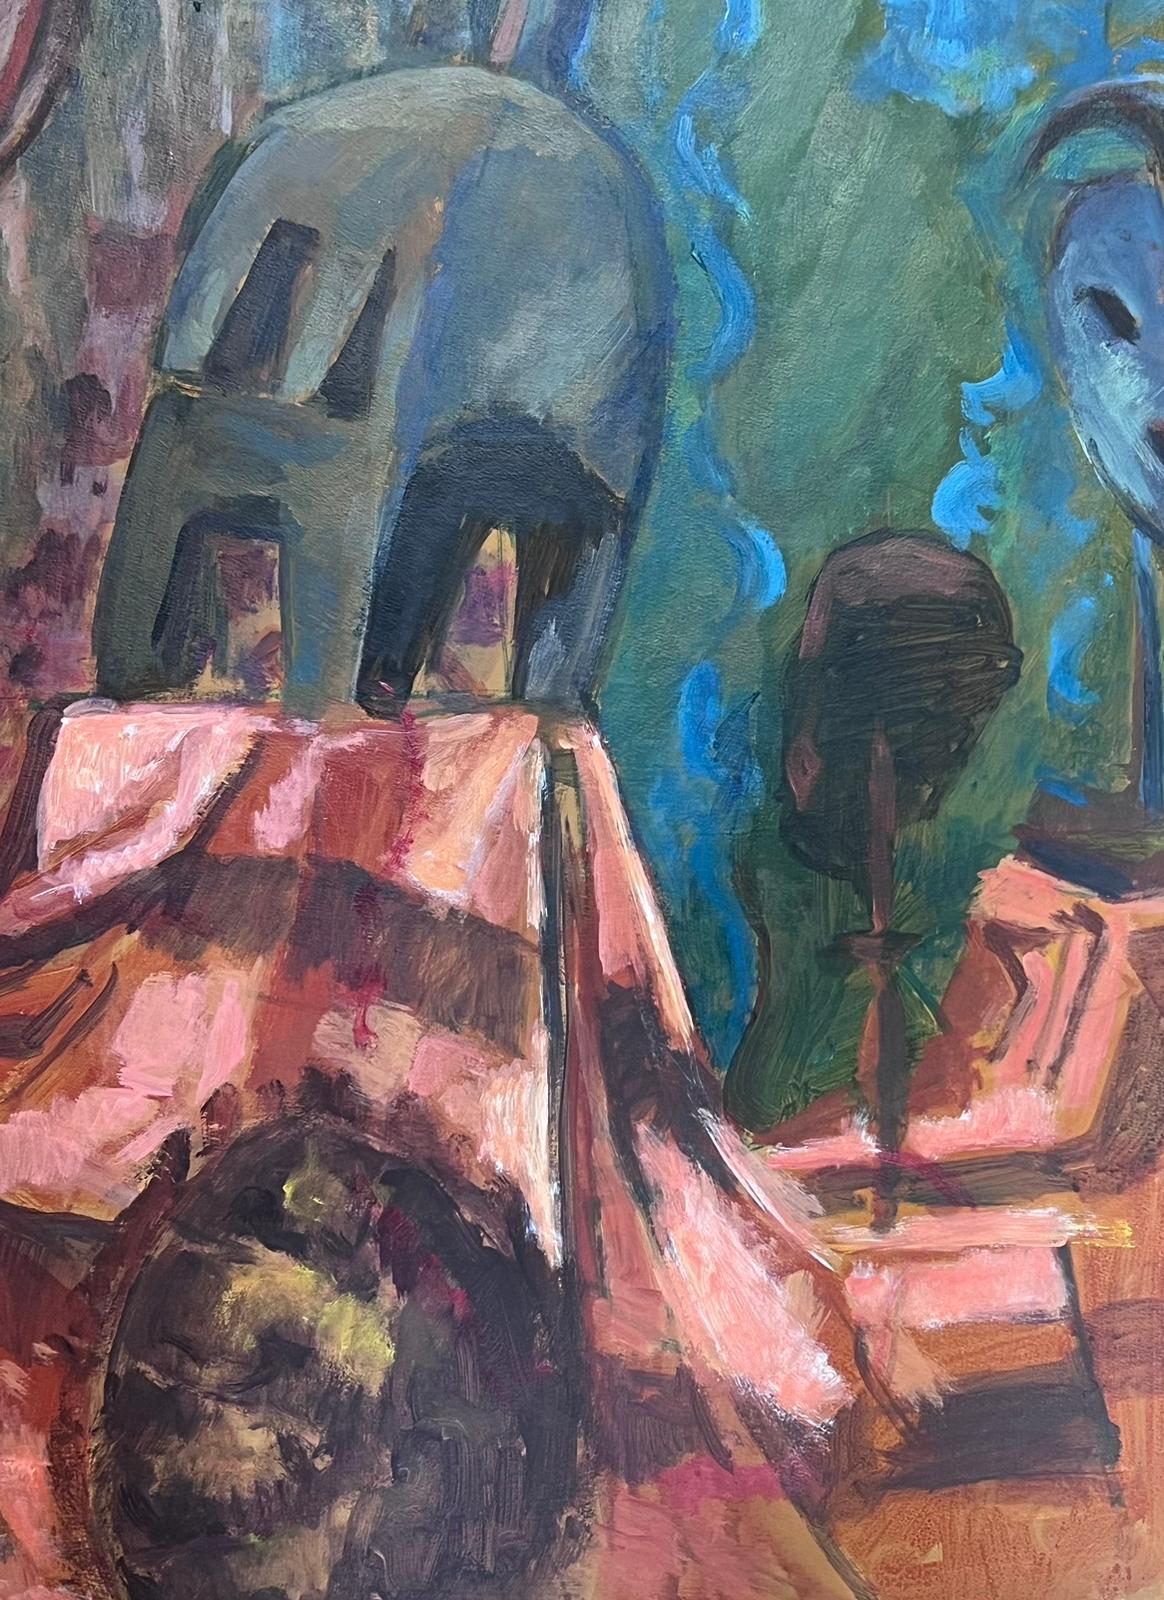 Roboter
von Guy Nicod
(Französisch 1923 - 2021)
Öl auf Künstlerpapier, ungerahmt
Gemälde: 25,5 x 19,5 Zoll
verso gestempelt
Herkunft: Künstlernachlass, Frankreich
Zustand: sehr guter und gesunder Zustand